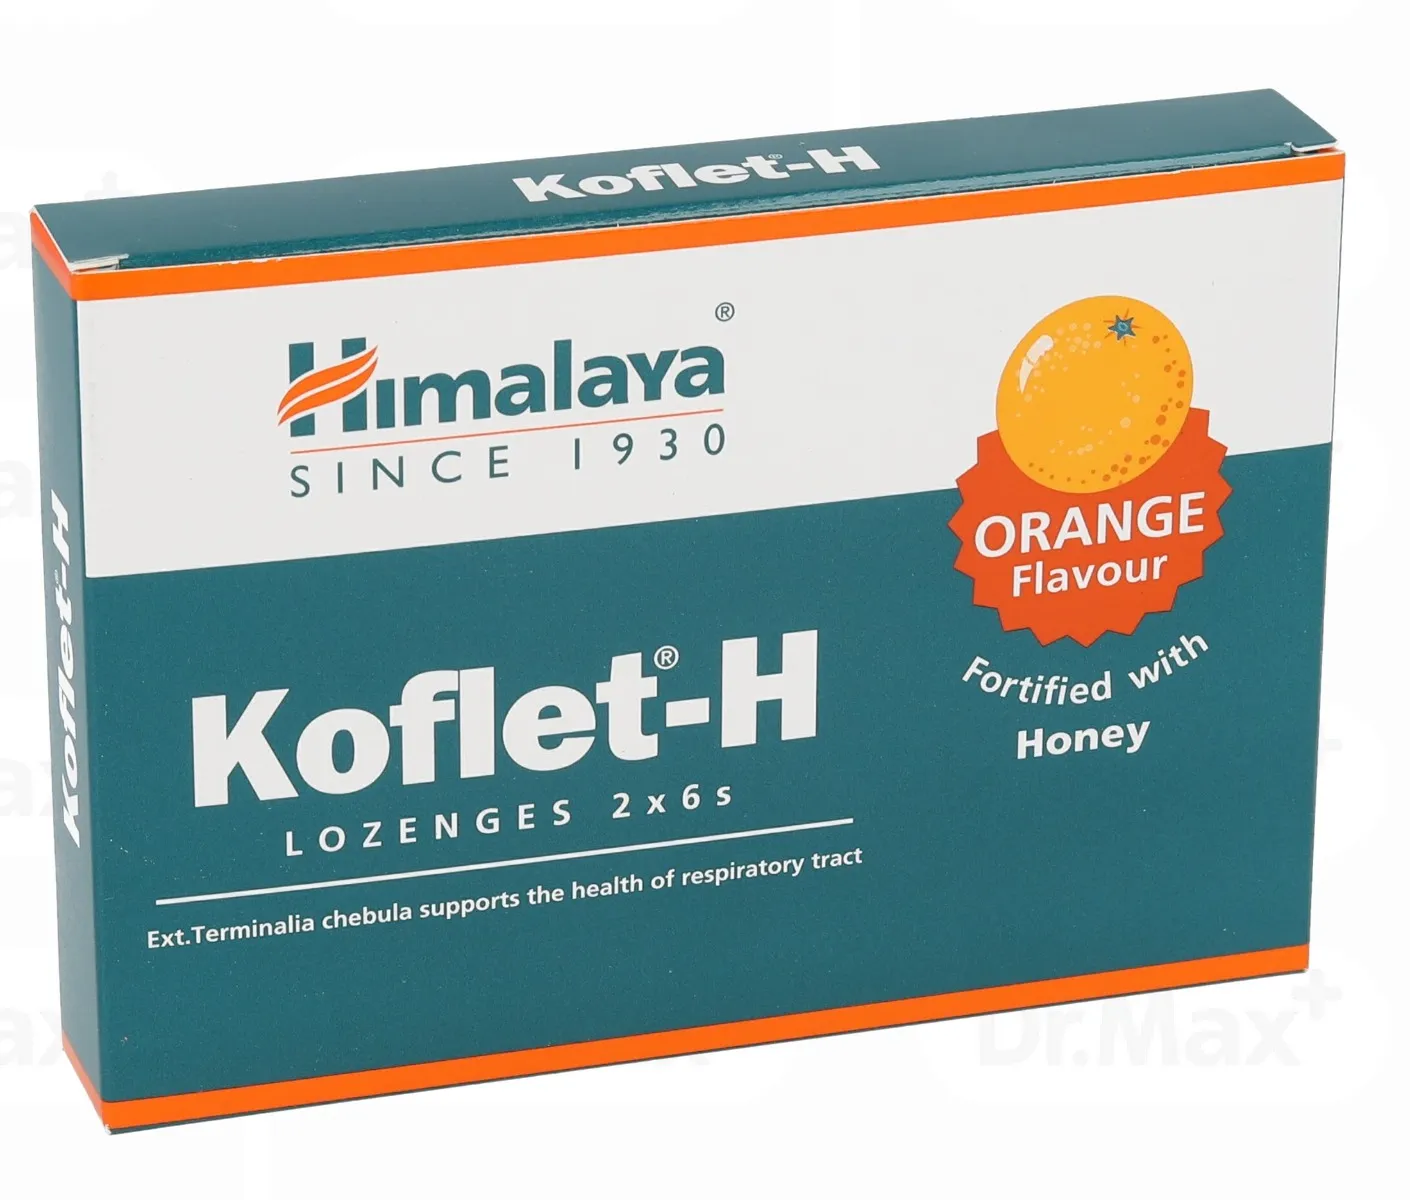 Koflet-H cu aroma de portocale, 12 pastile, Himalaya